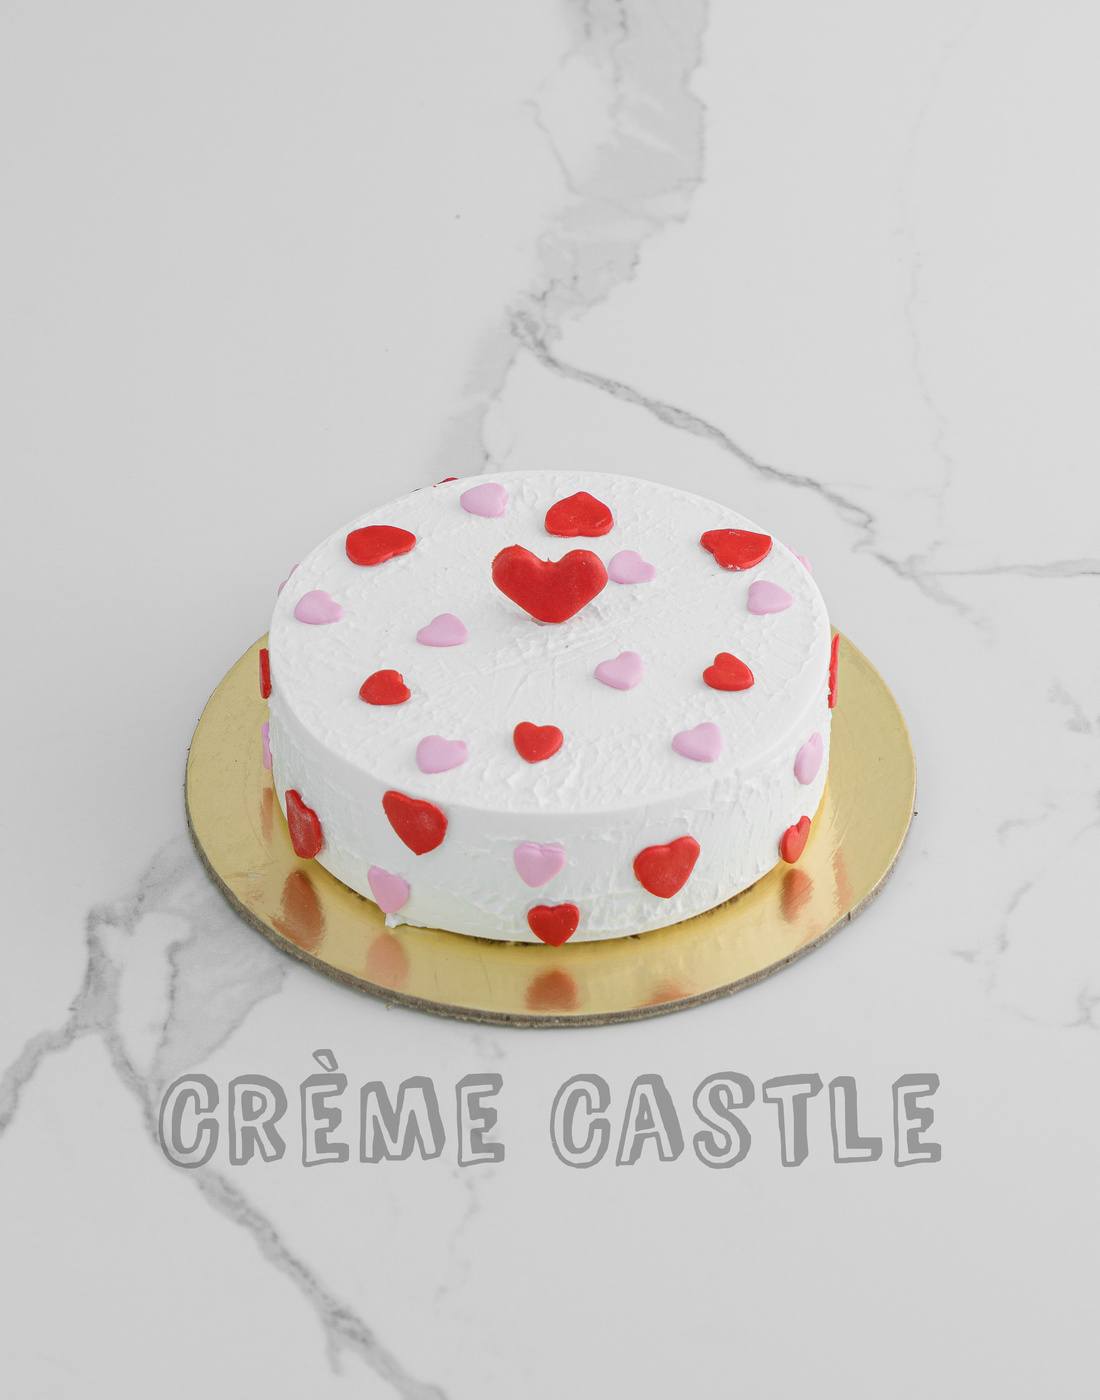 Anniversary Cake Design | Romantic Anniversary Cake